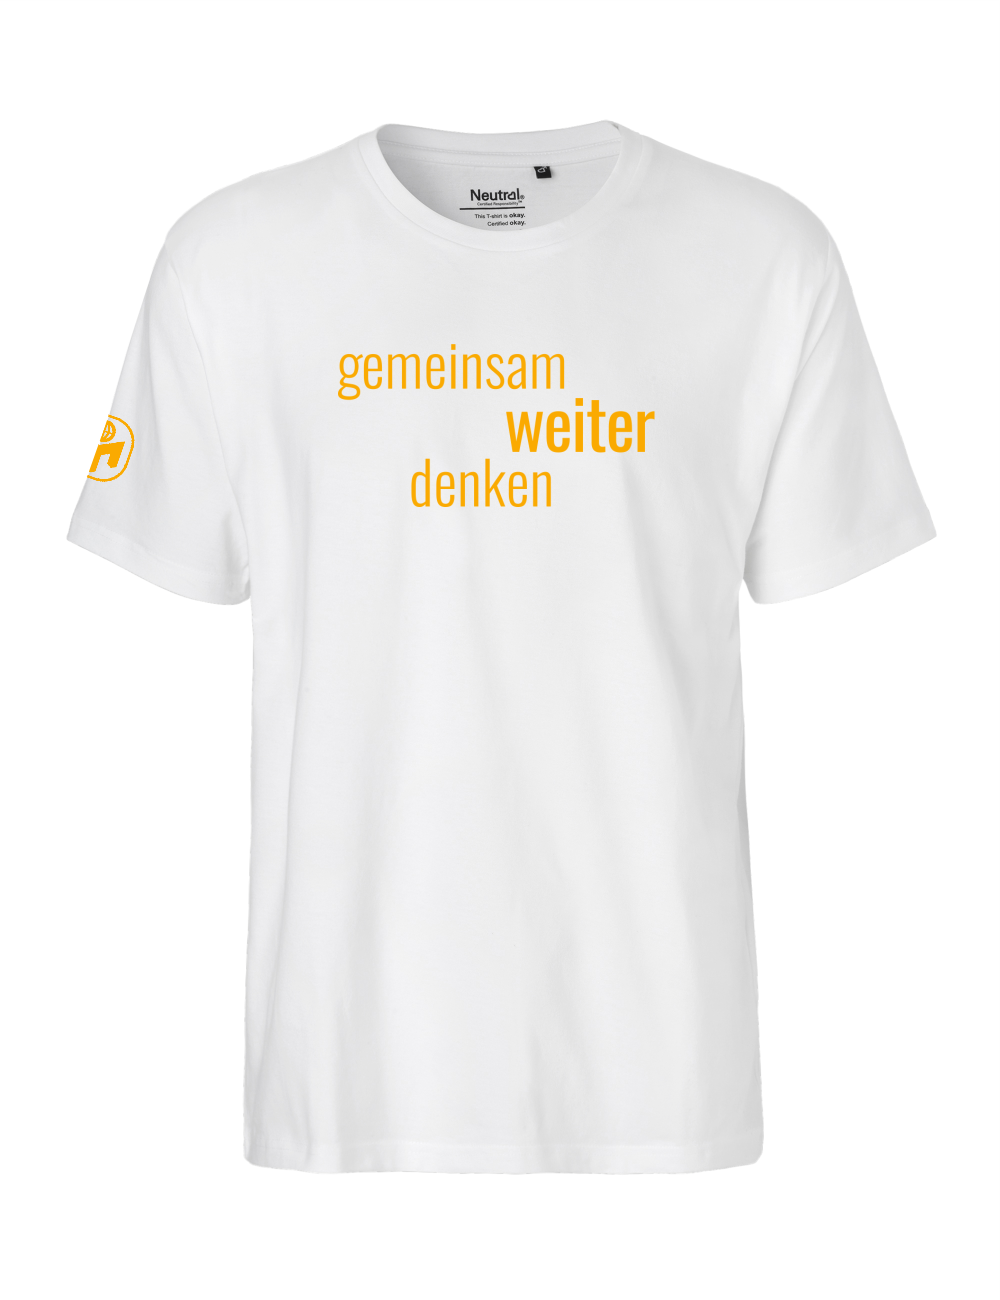 T-Shirt Herren "Gemeinsam weiter denken" Premium